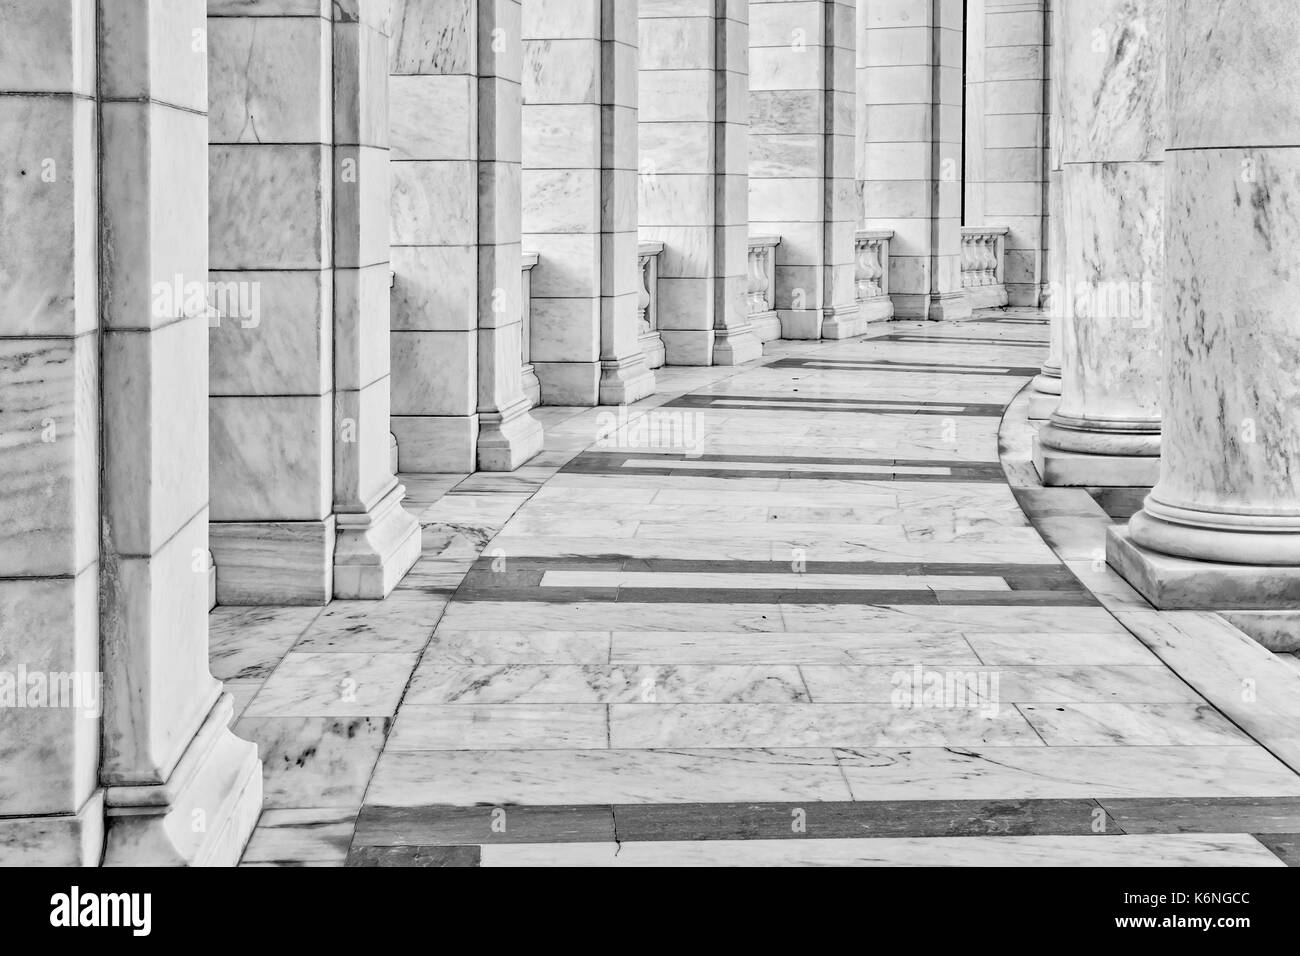 Amphithéâtre Arlington arcades et Colonnes II - Arlington National Cemetery's Amphitheatre détails architecturaux de l'arcs et de colonnes en marbre vue de l'arrière et à l'un des côtés de l'intérieur du théâtre en plein air dans la région de Arlington, VA. Banque D'Images